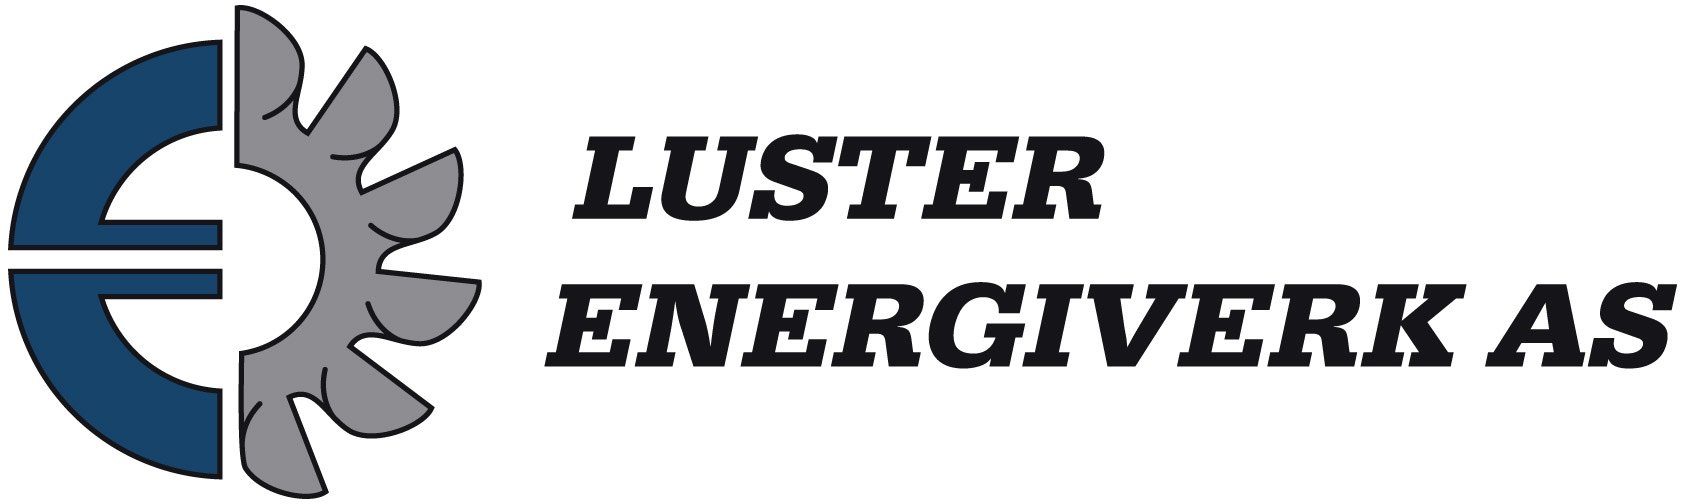 Chandelier_energy_logo for screen use.jpg